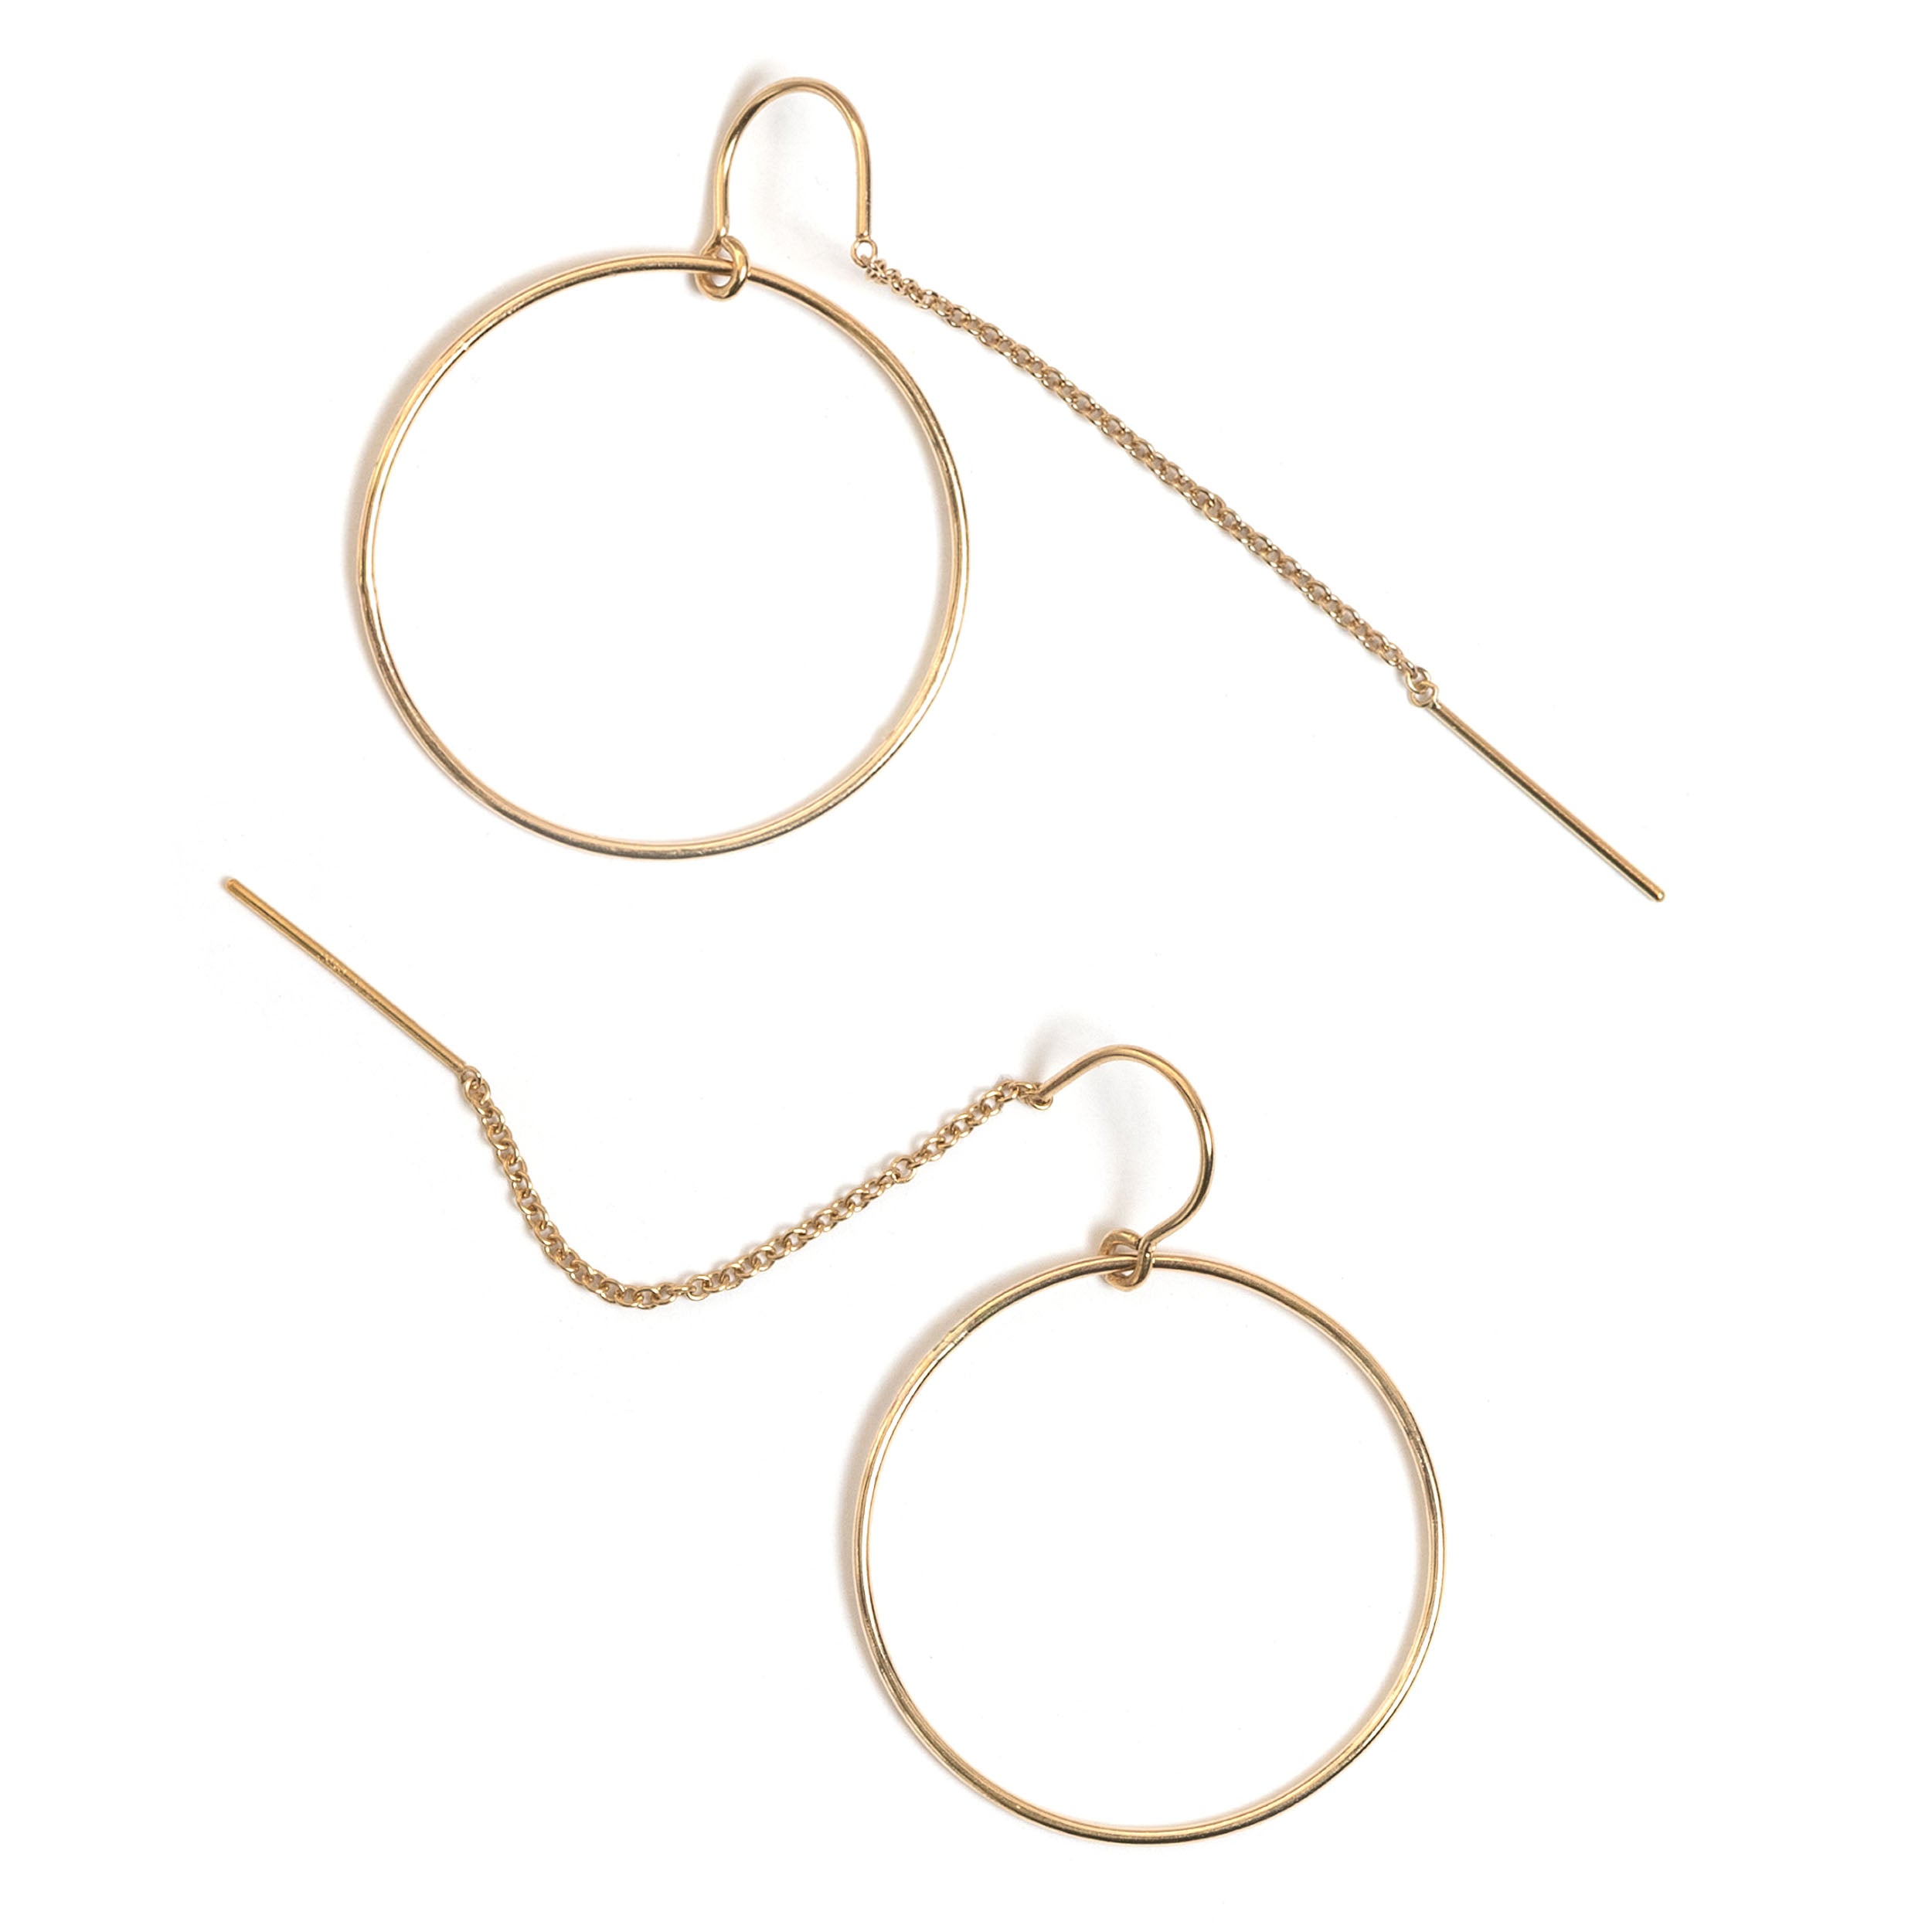 Trace Open Circle Ear Thread Earrings - Favor Jewelry